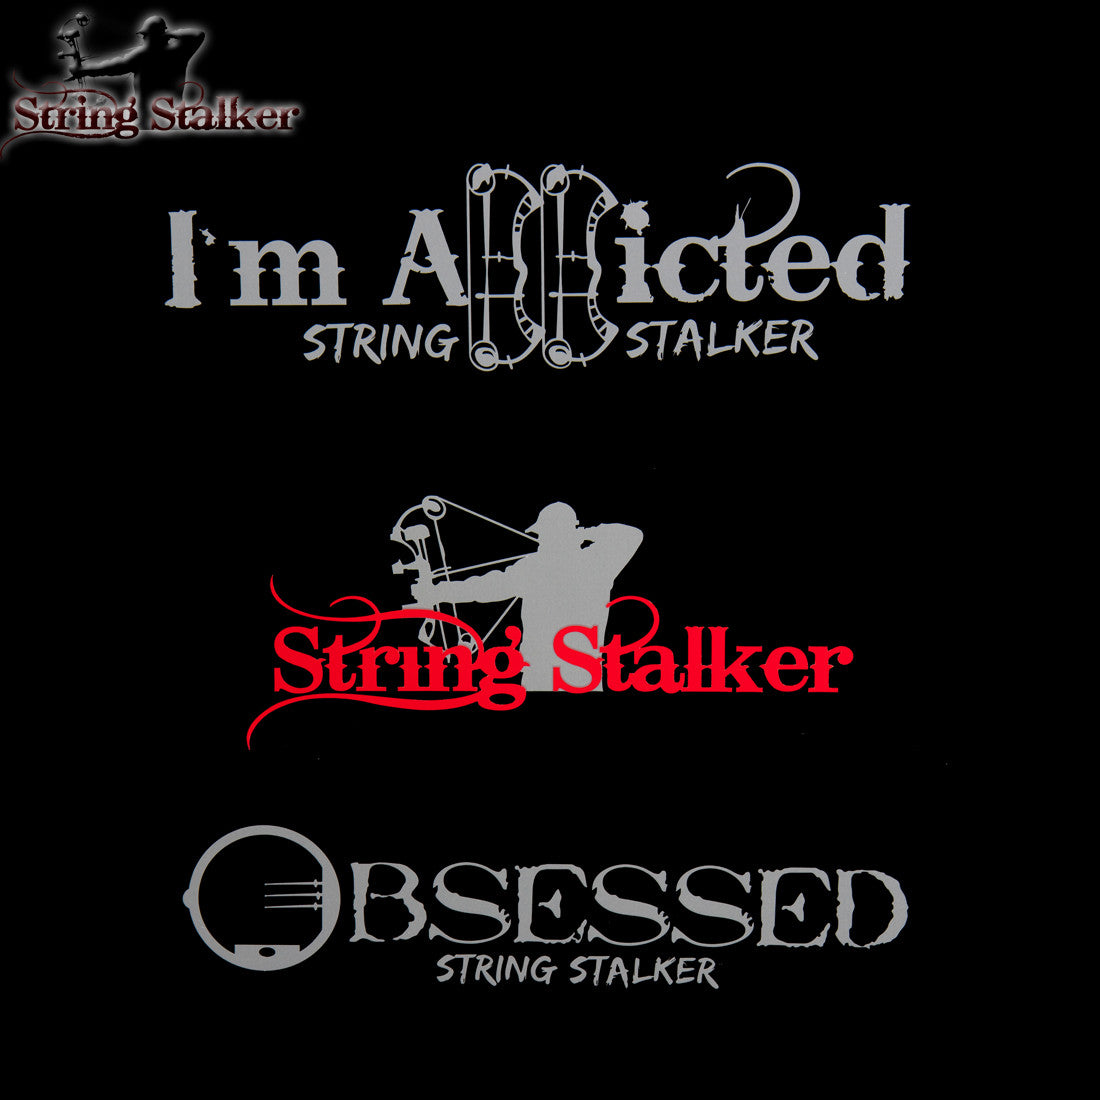 String Stalker Bow Hunting Decal 3 Pack #2 - String Stalker